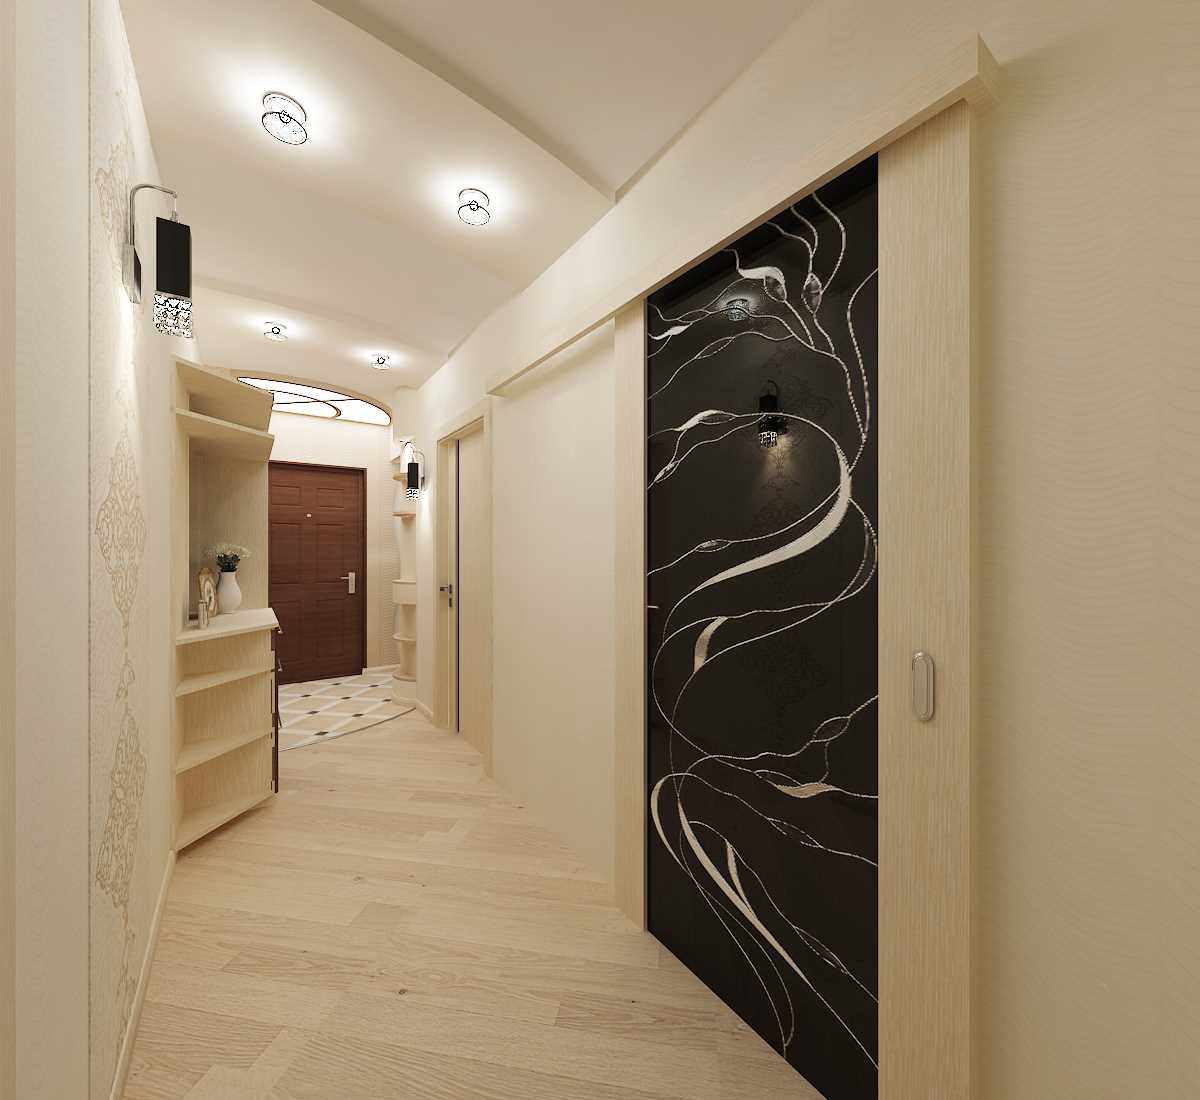 Một ví dụ về thiết kế ánh sáng của một hành lang hiện đại